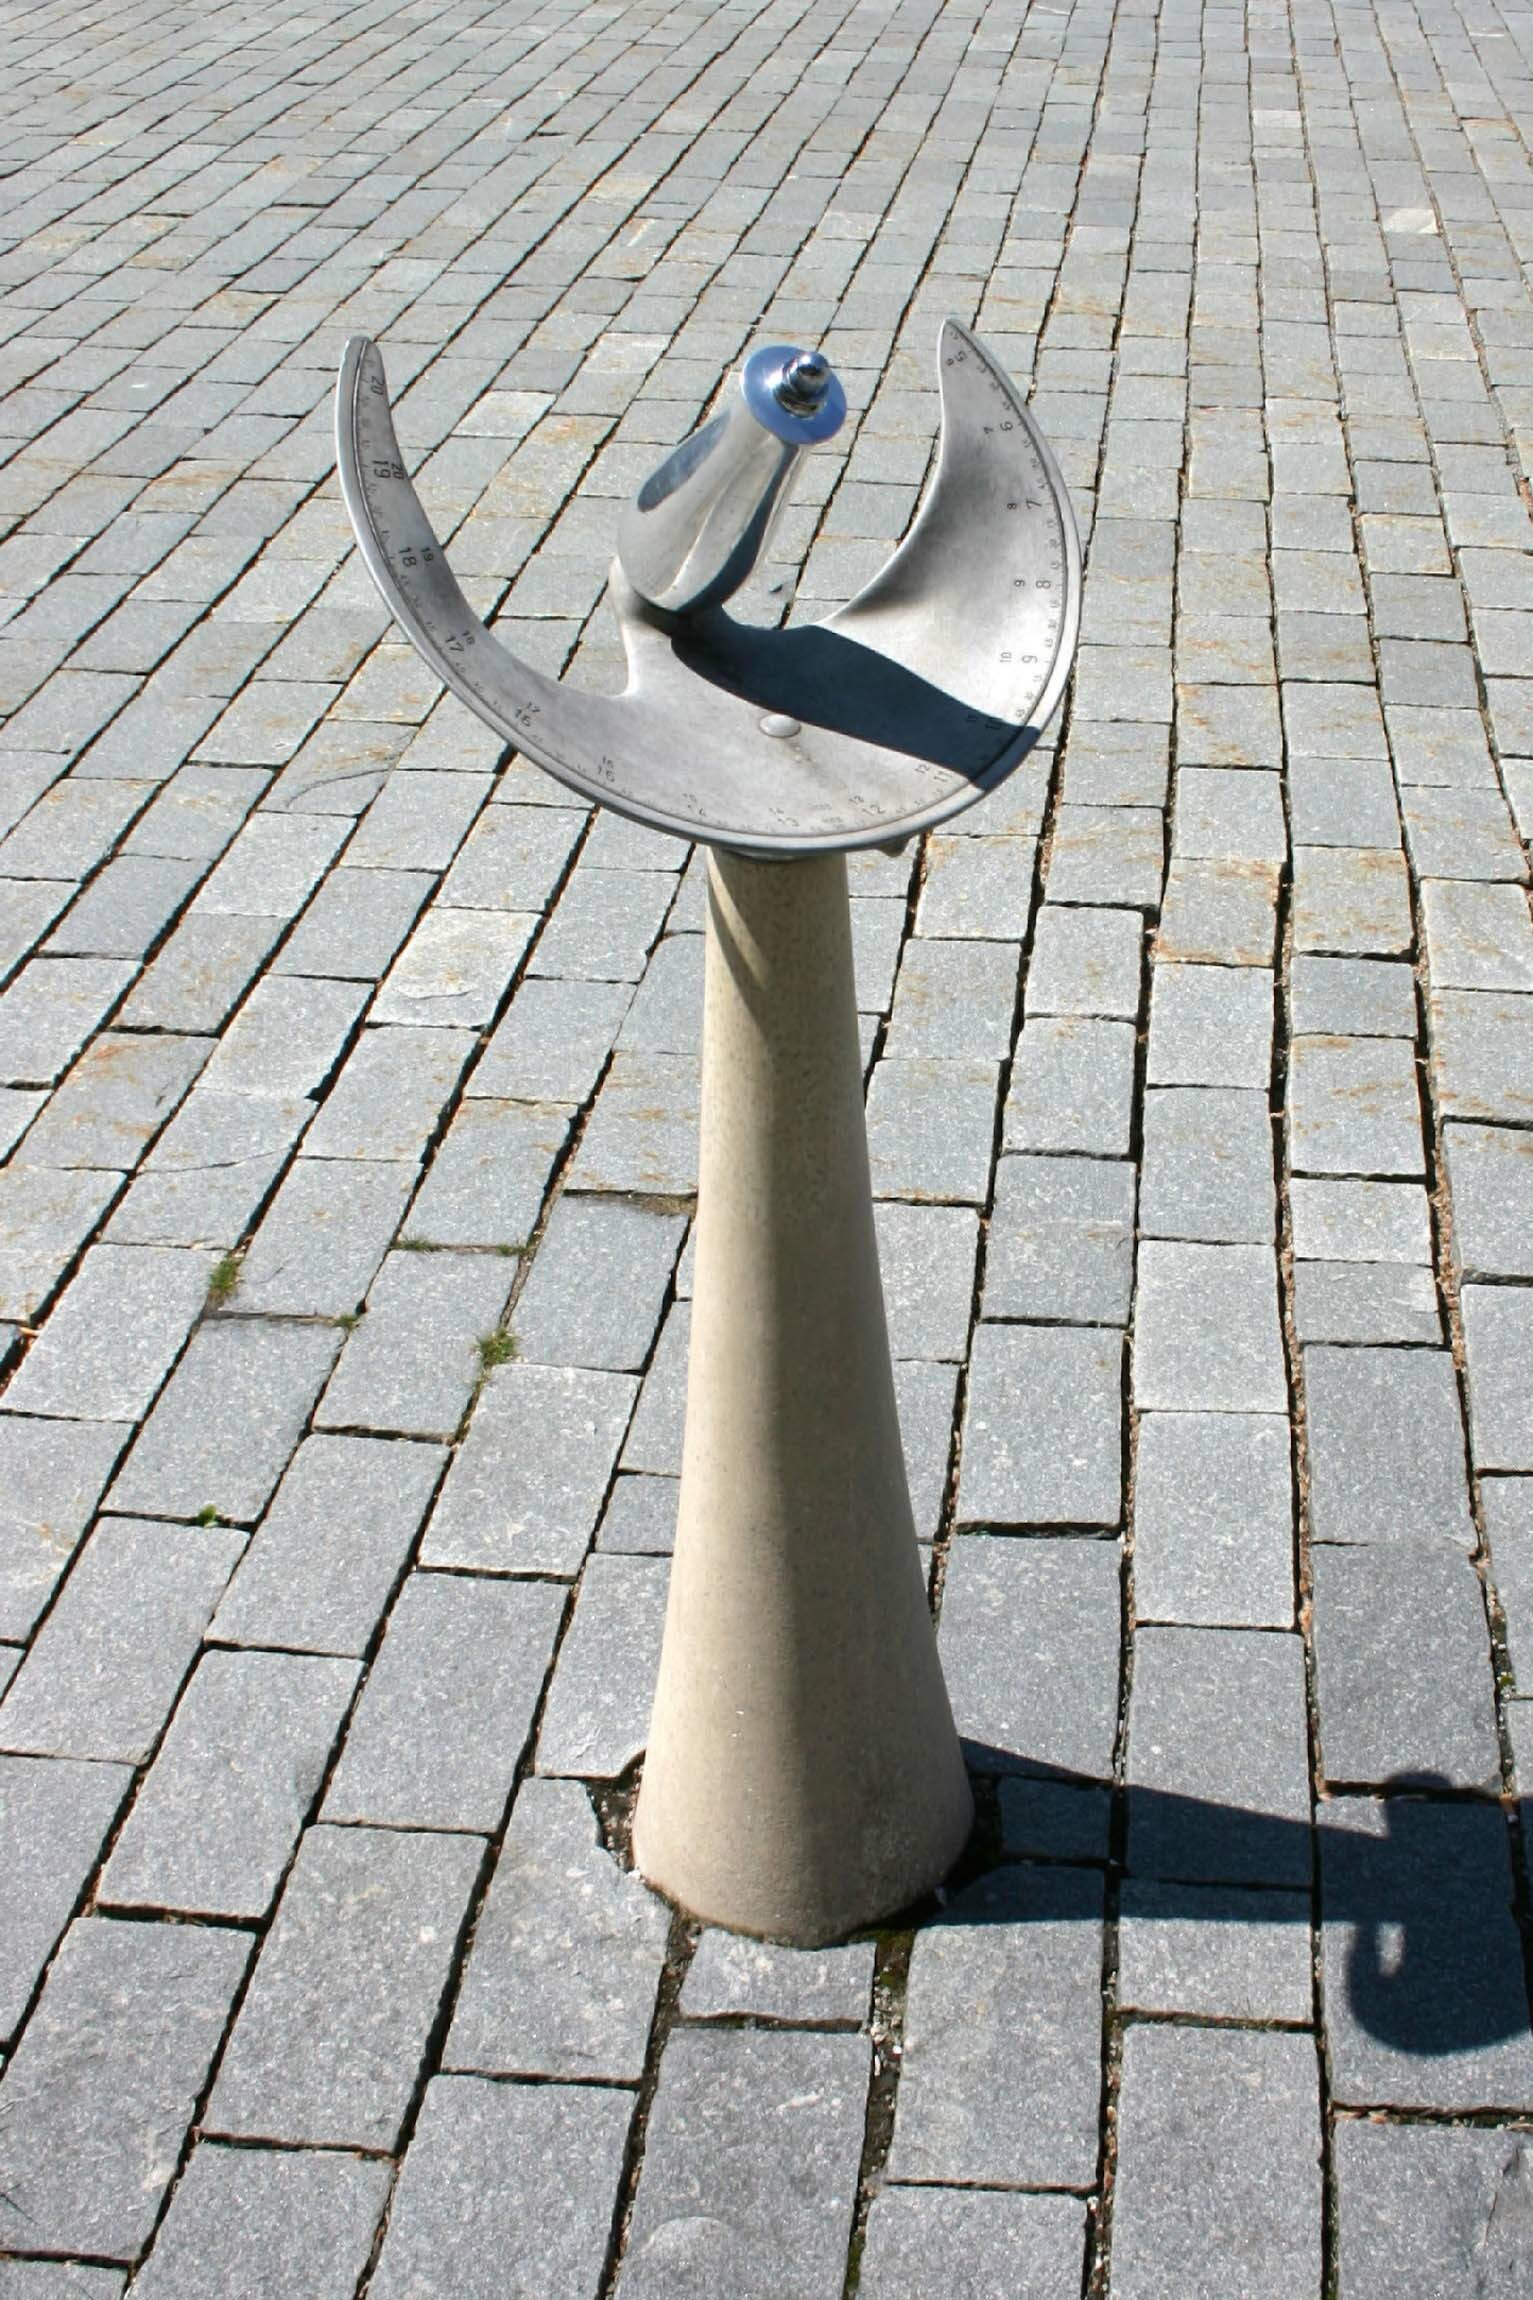 Sonnenuhr, Martin Bernhardt, Bietigheim, 1983 (Deutsches Uhrenmuseum CC BY-SA)